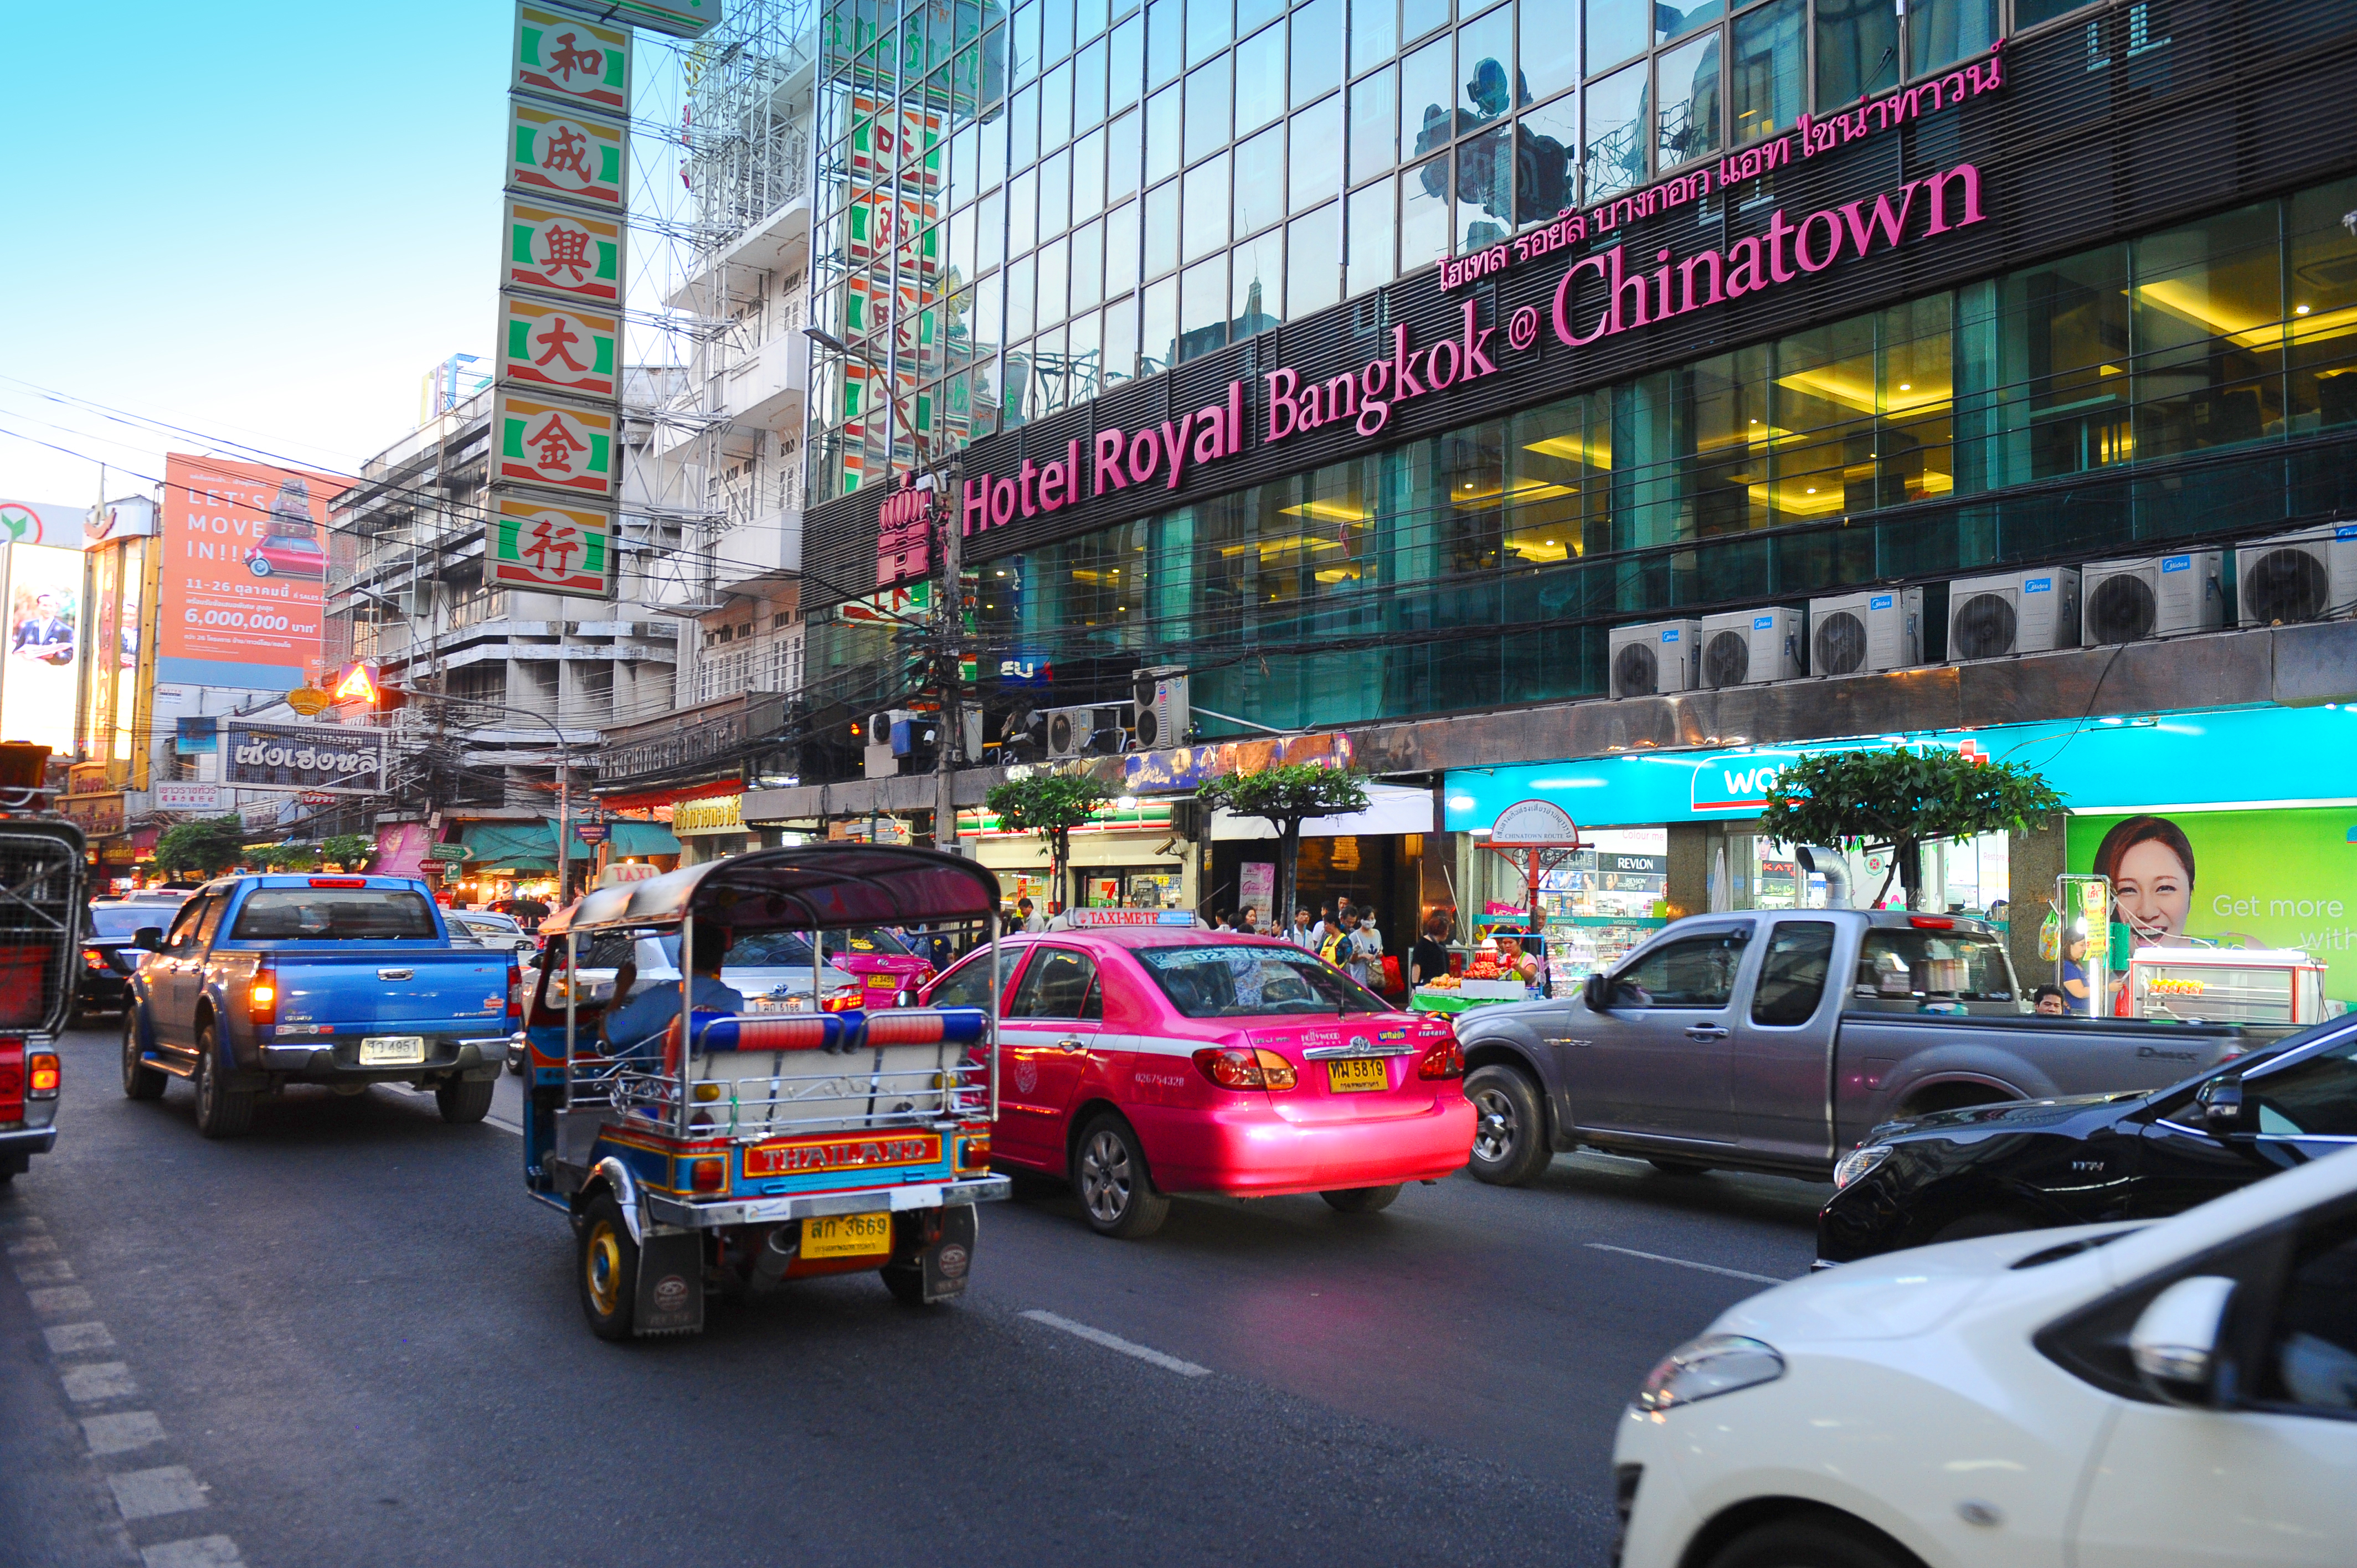 Royal Bangkok @ Chinatown  